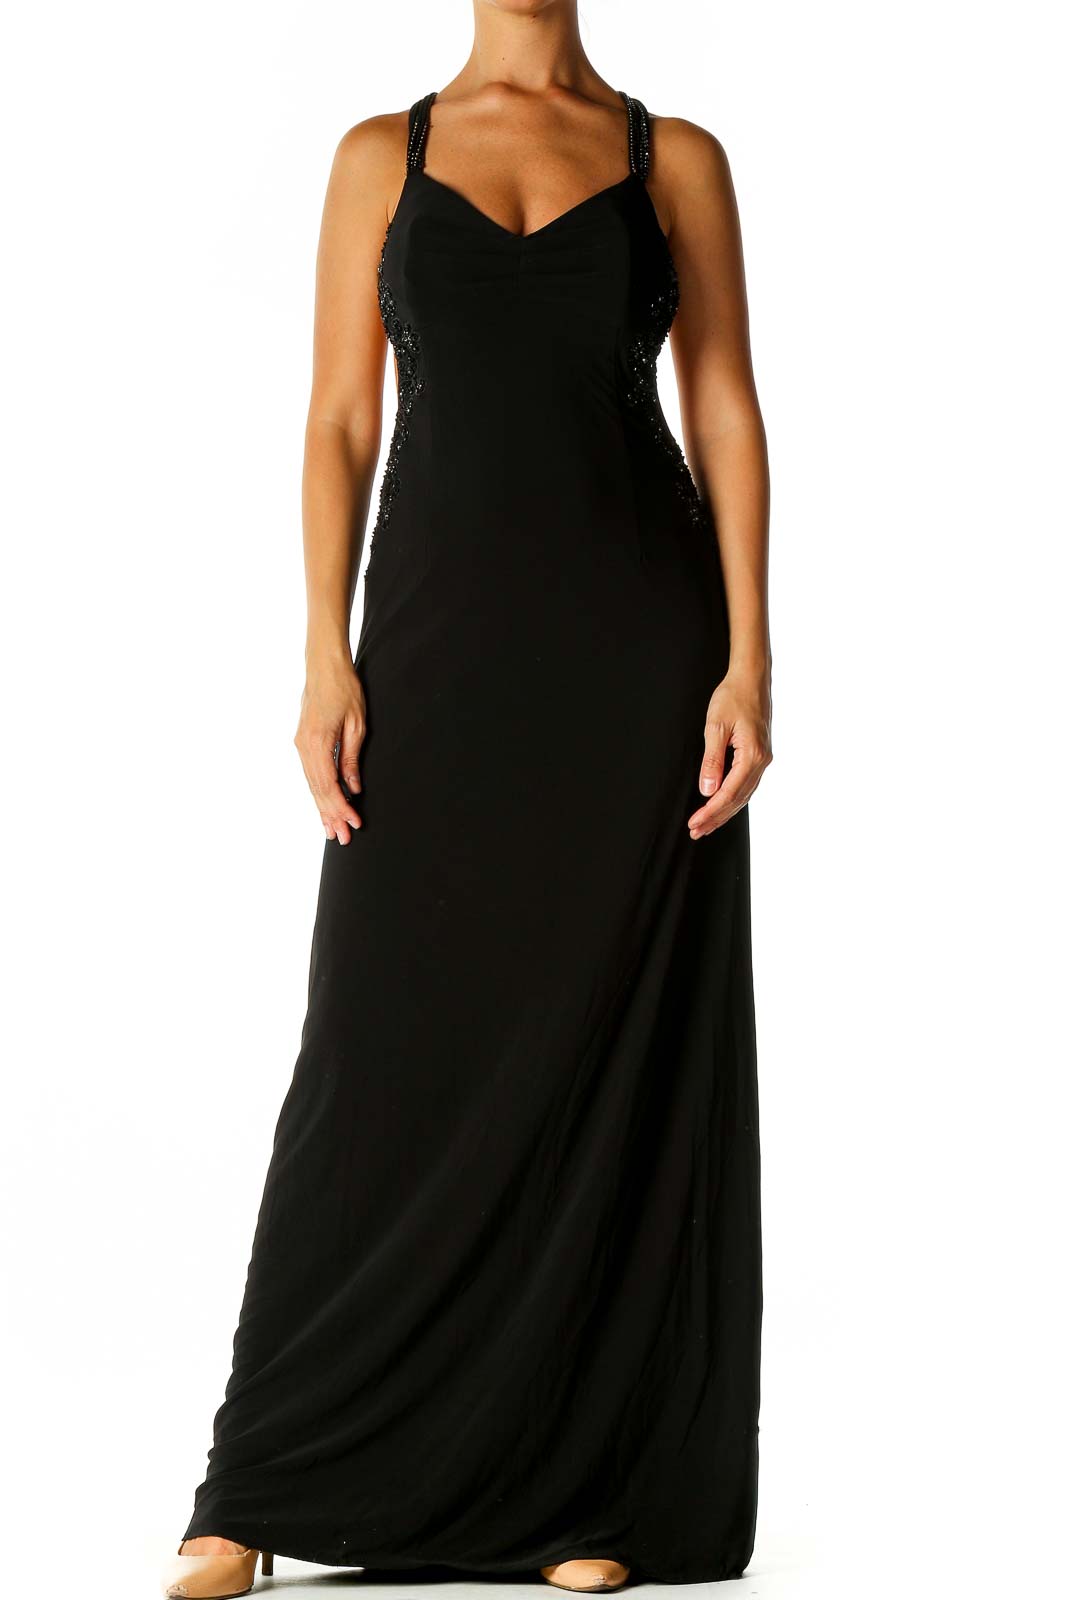 Black Solid Column Dress Front